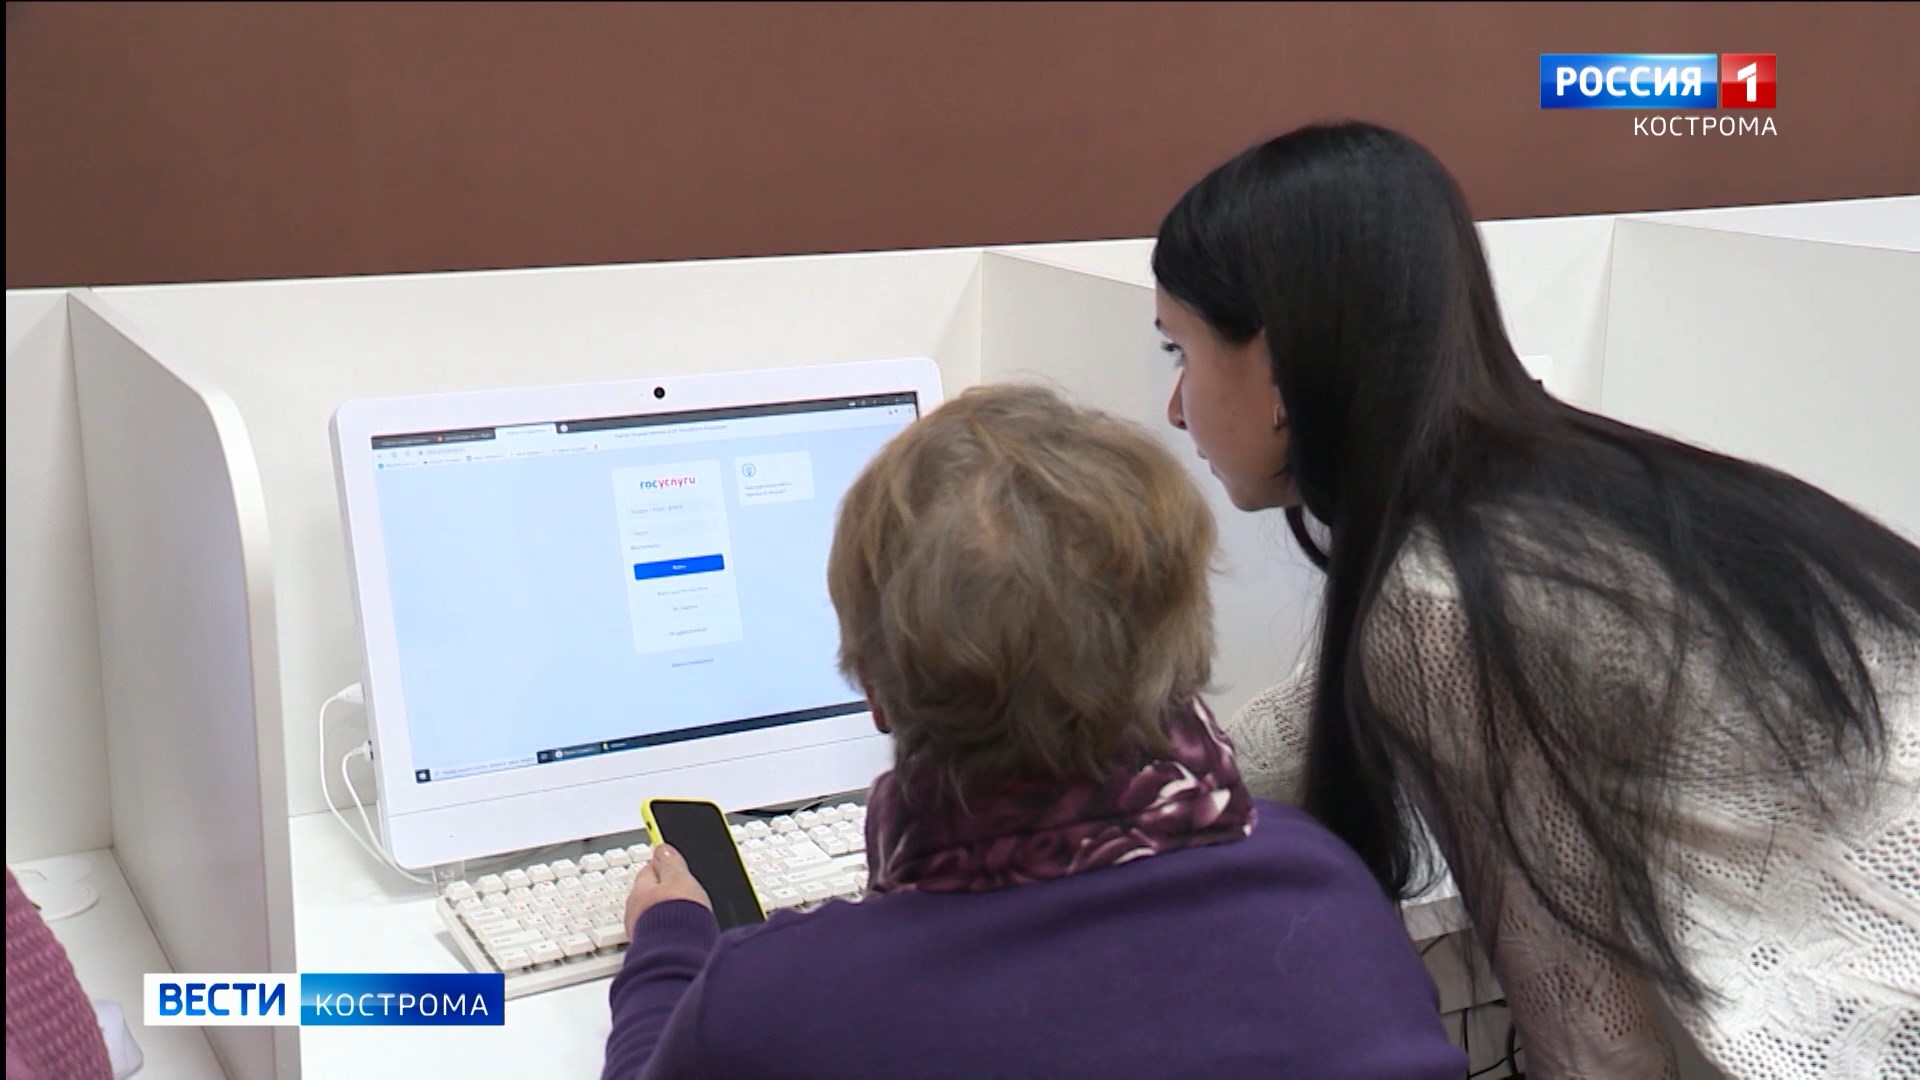 Во всех отделениях МФЦ Костромской области организованы цифровые уроки для пенсионеров